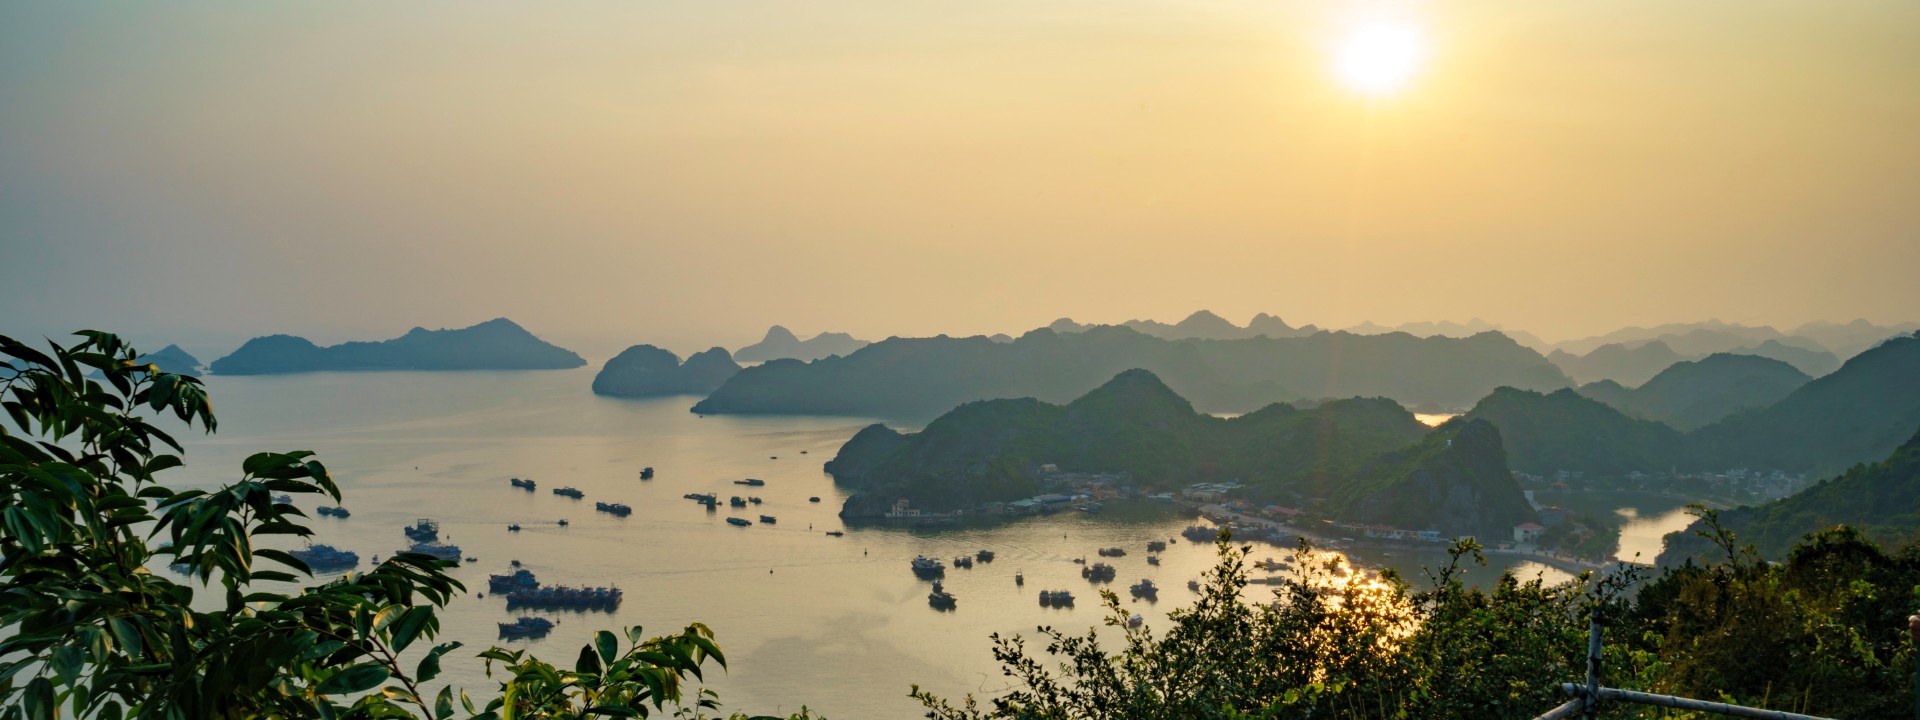 Inmerso en la cultura y naturaleza del Norte de Vietnam